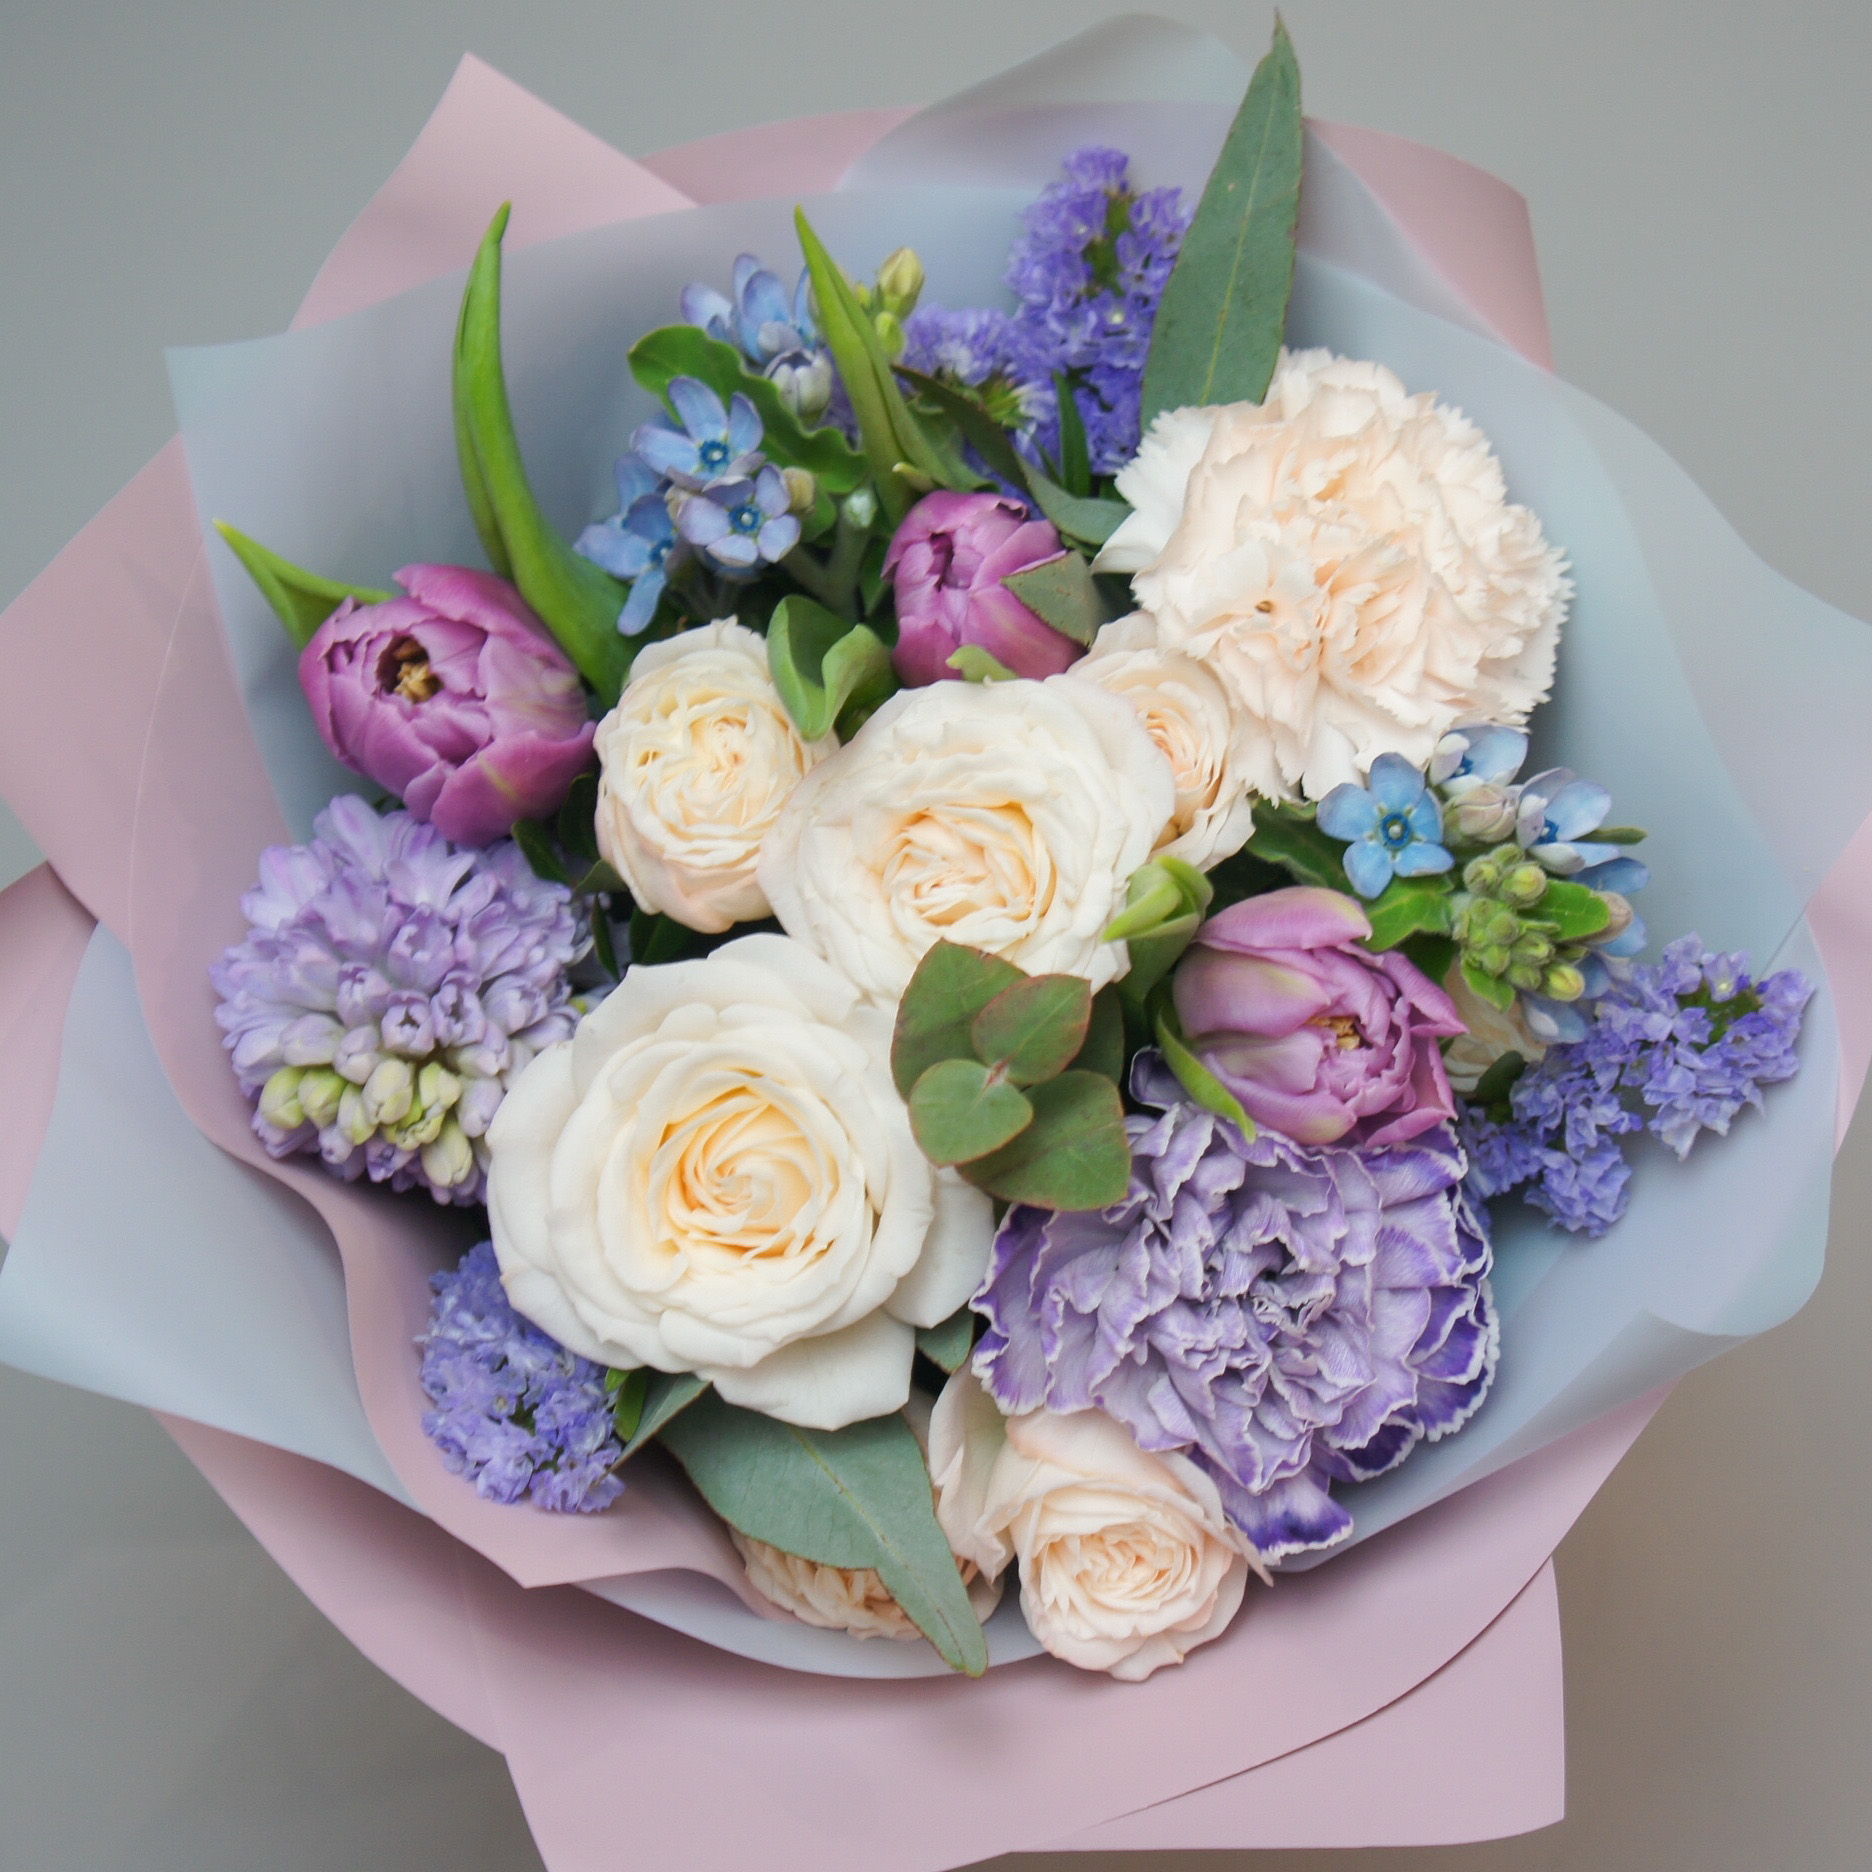 Купить букет / цветы Оливия2 в Москве с доставкой по отличной цене